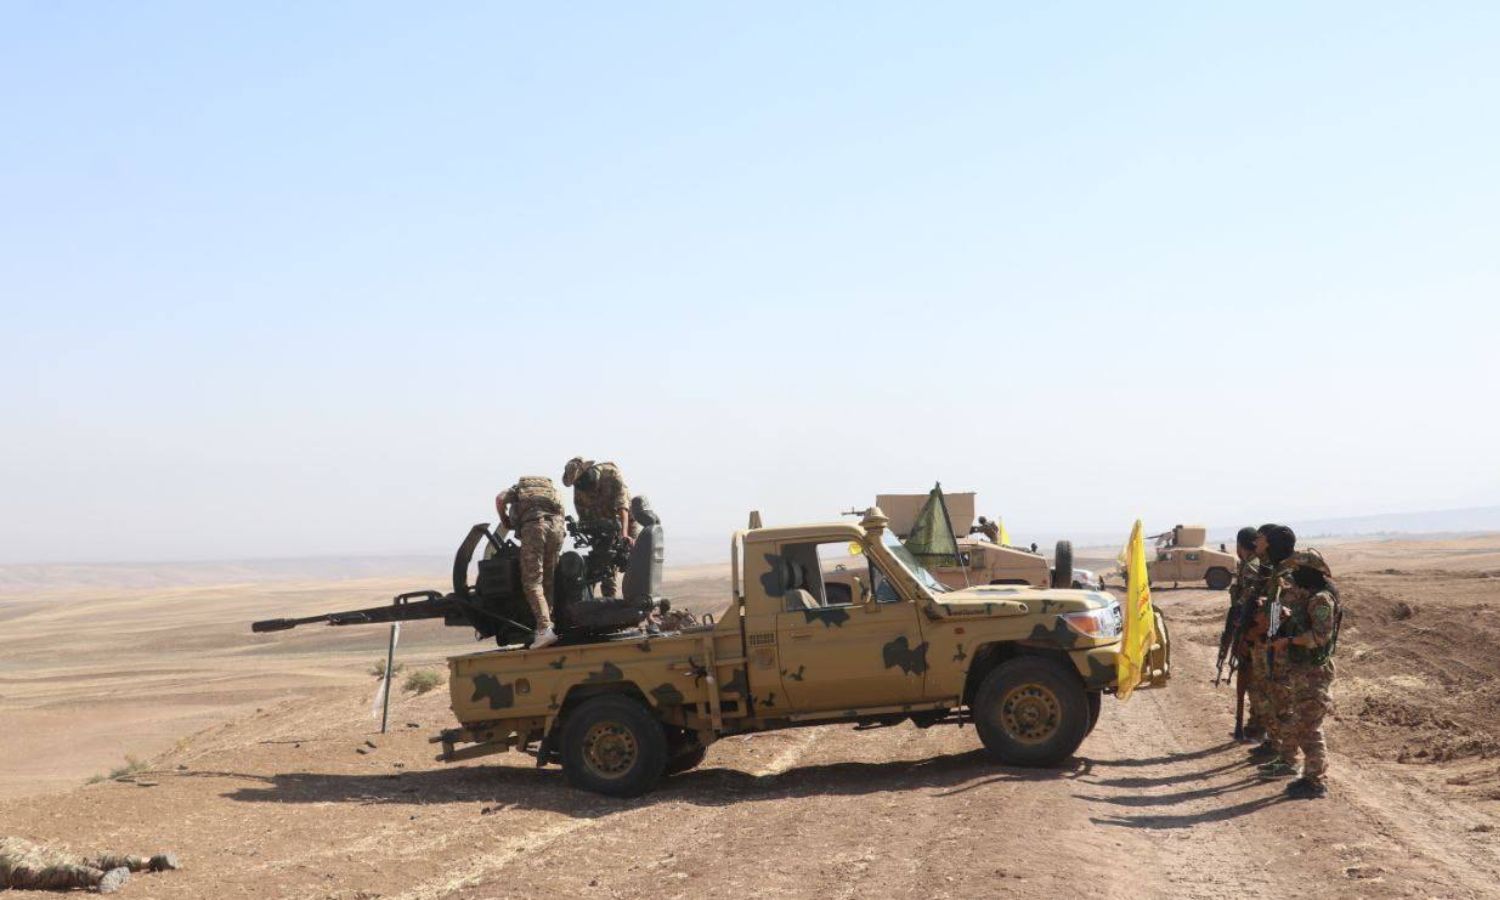 تدريبات عسكرية لـ"قوات سوريا الديمقراطية" (قسد) مع قوات التحالف الدولي بريف الحسكة- أيلول 2022 (SDF)